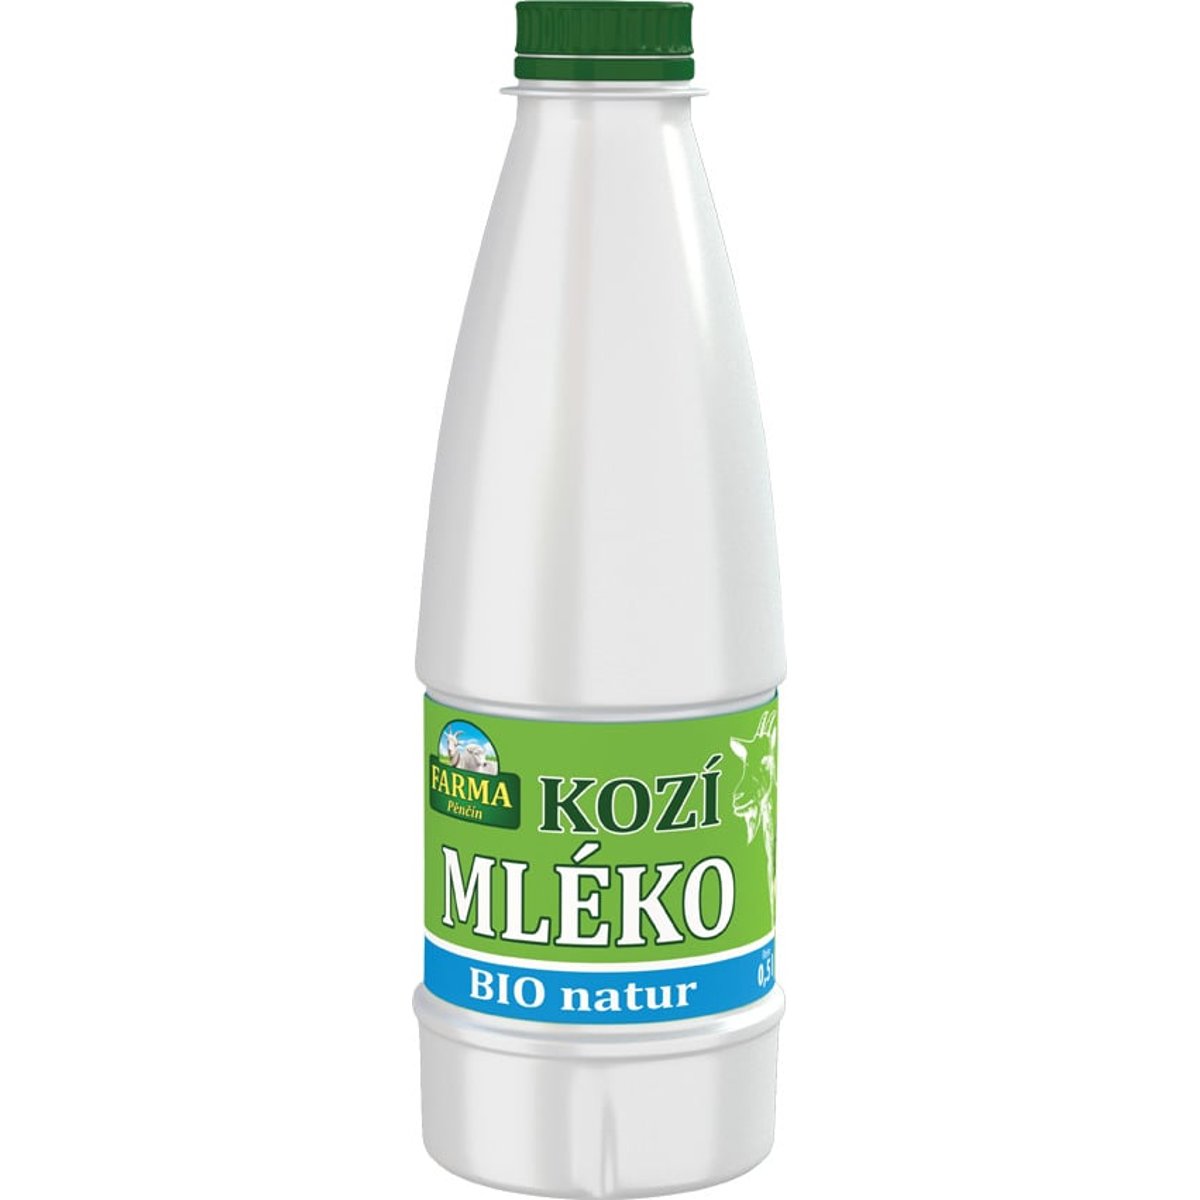 Farma Pěnčín BIO Čerstvé kozí mléko z farmy 3,5 % v akci